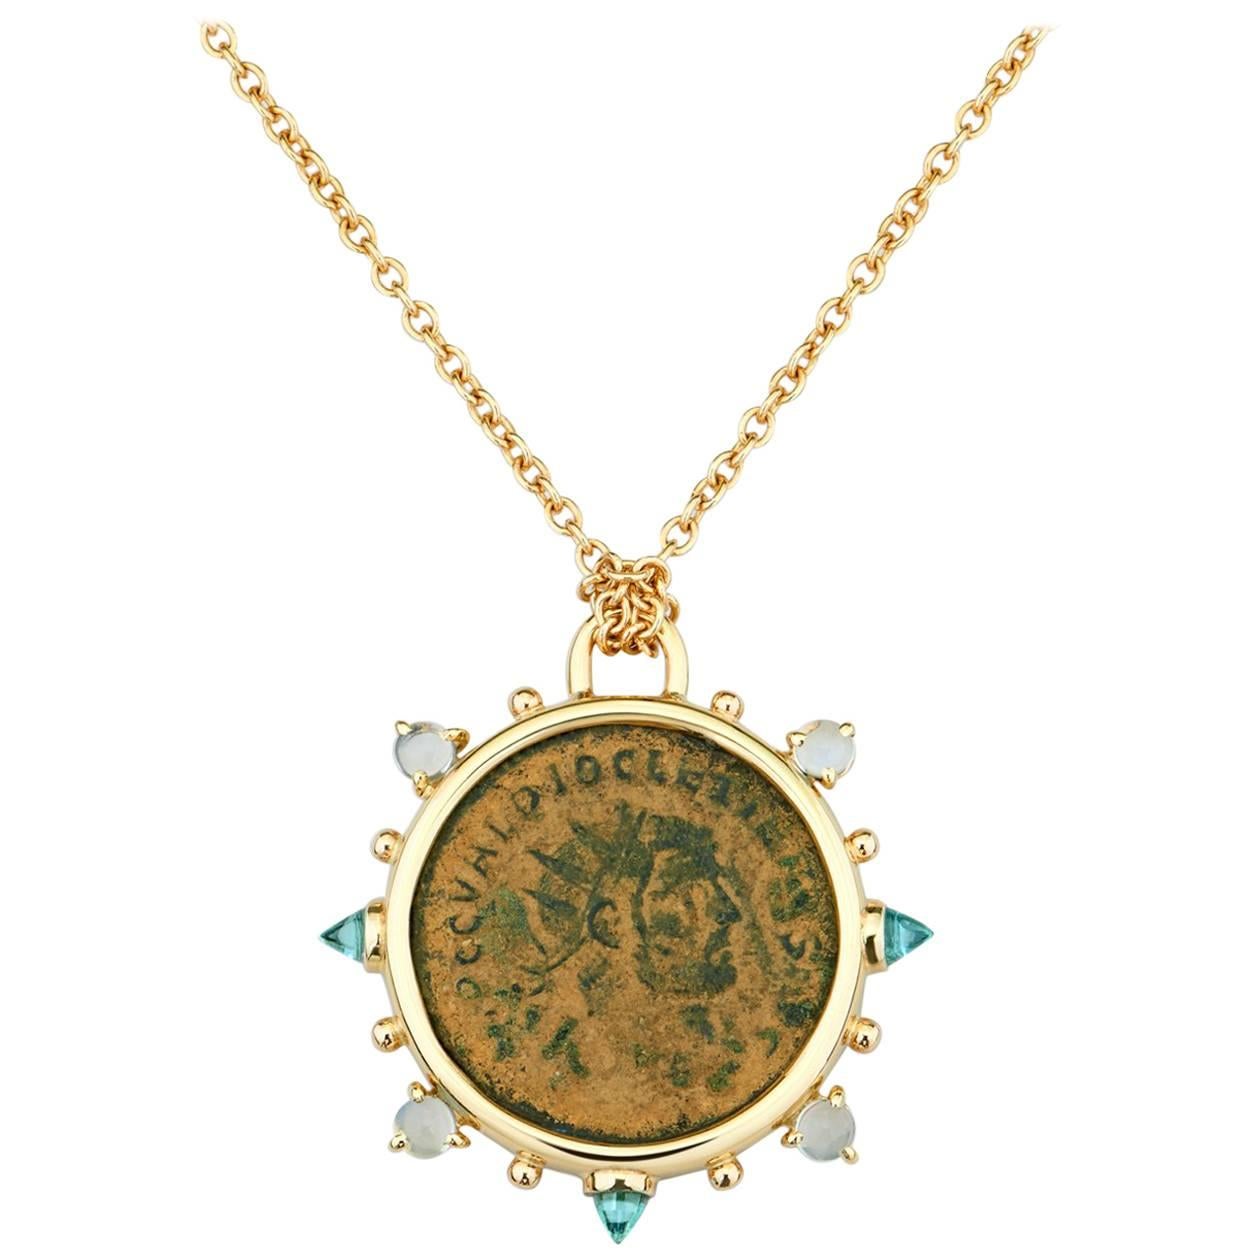 Dubini, collier en or 18 carats avec médaillon, médaillon en bronze et pierre de lune en forme de pièce de monnaie de style Diocletian antique